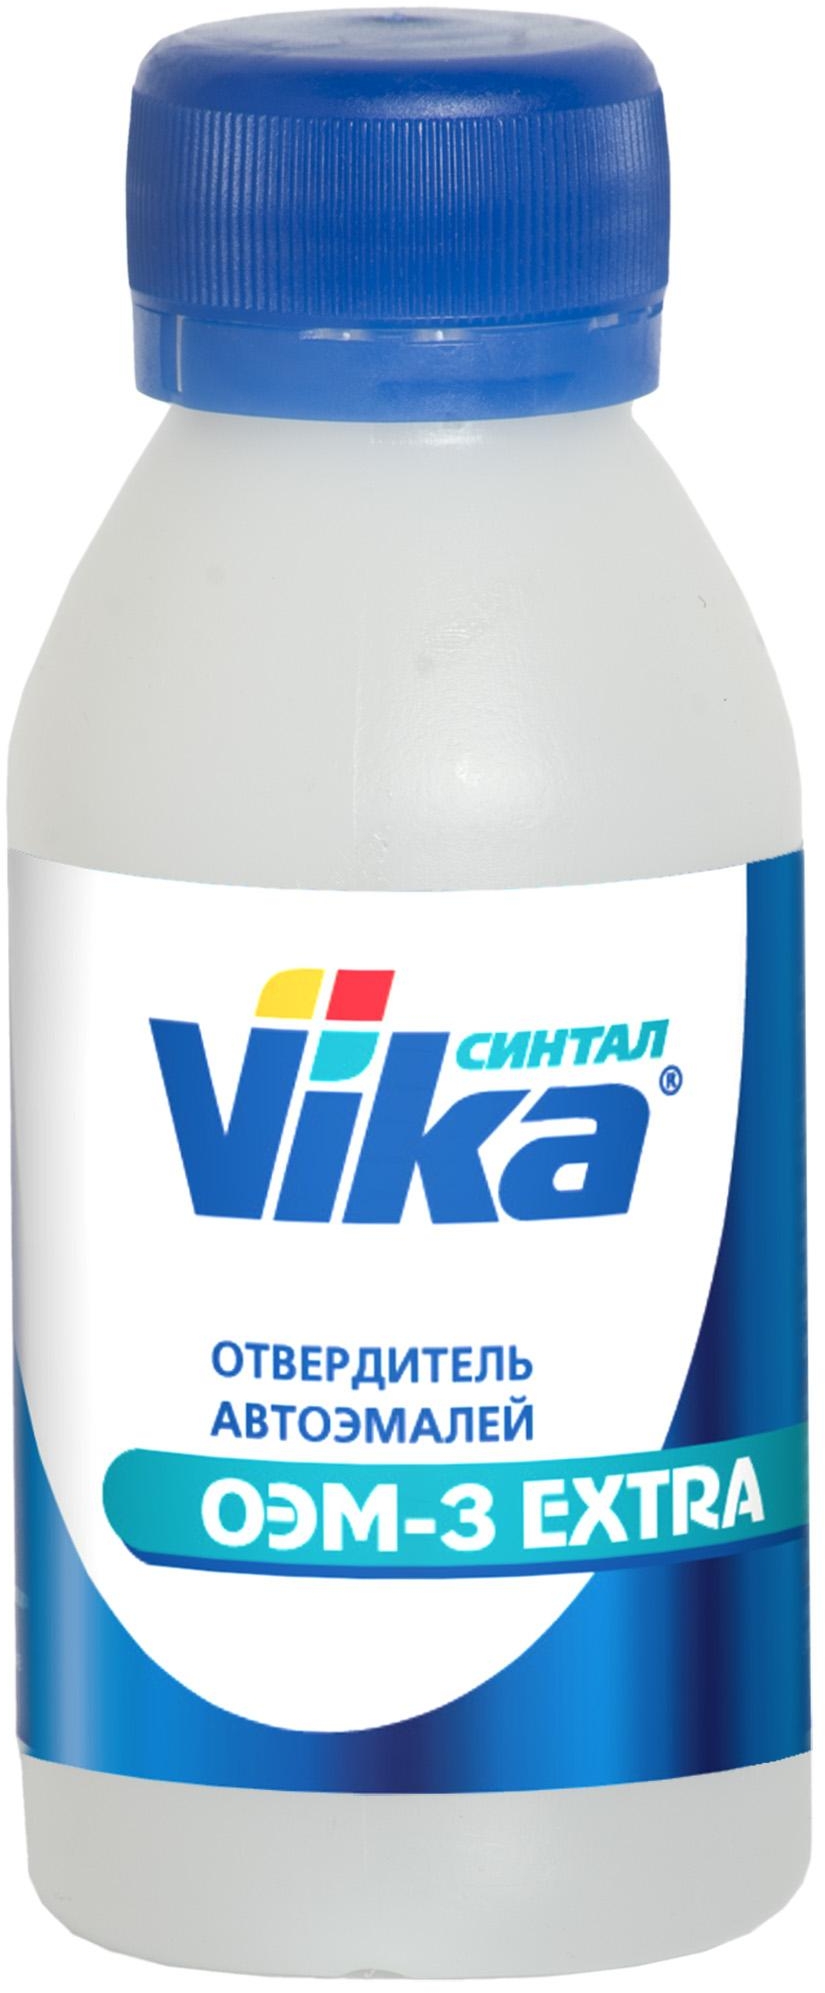 Отвердитель Vika ОЭМ-3 ЭКСТРА 0,08кг пластик 